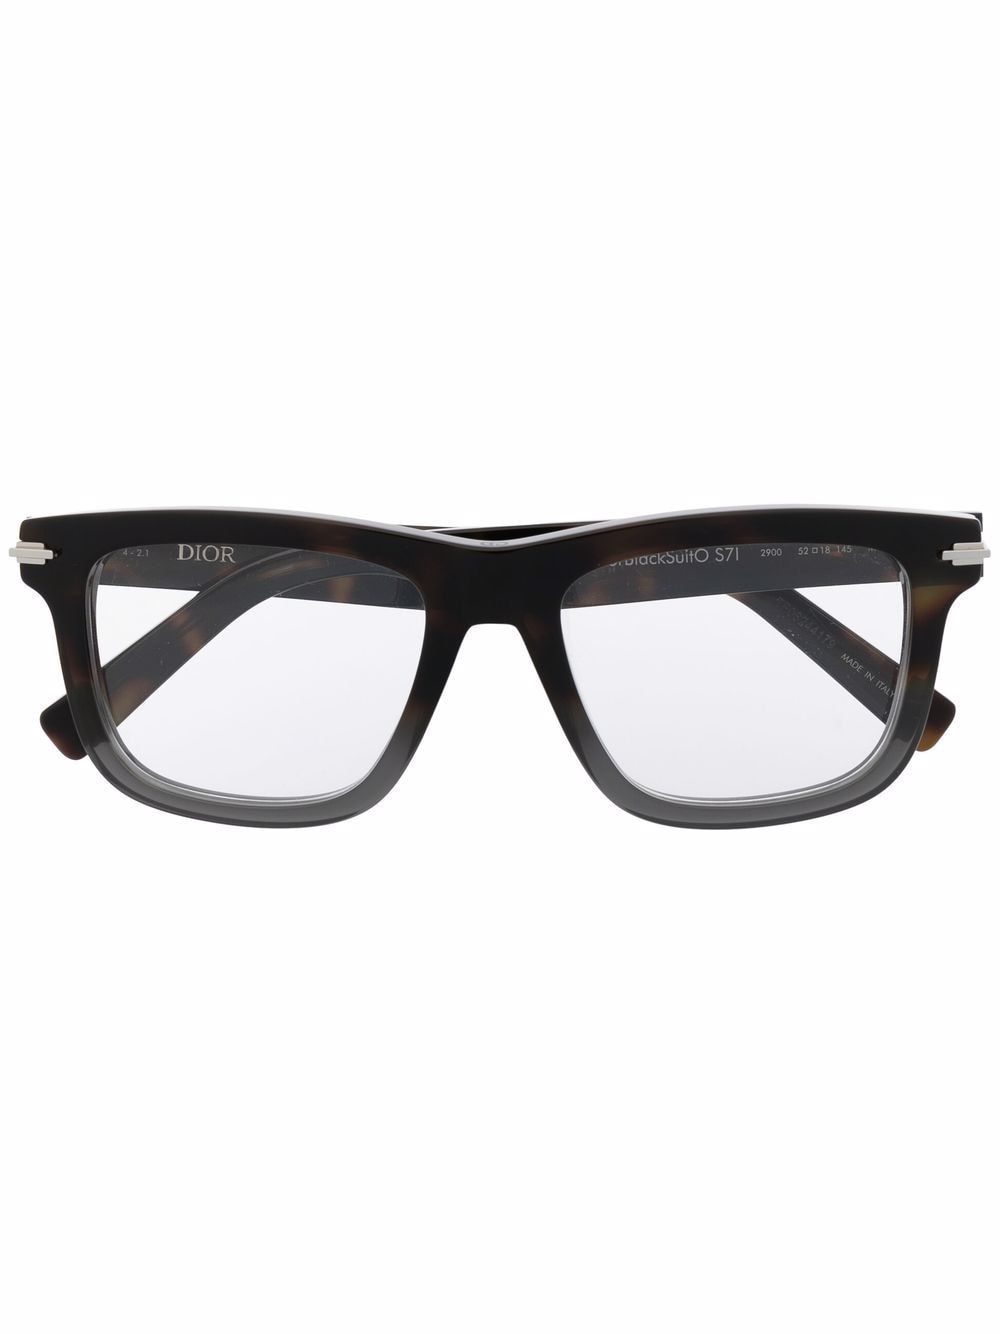 фото Dior eyewear очки в квадратной оправе черепаховой расцветки